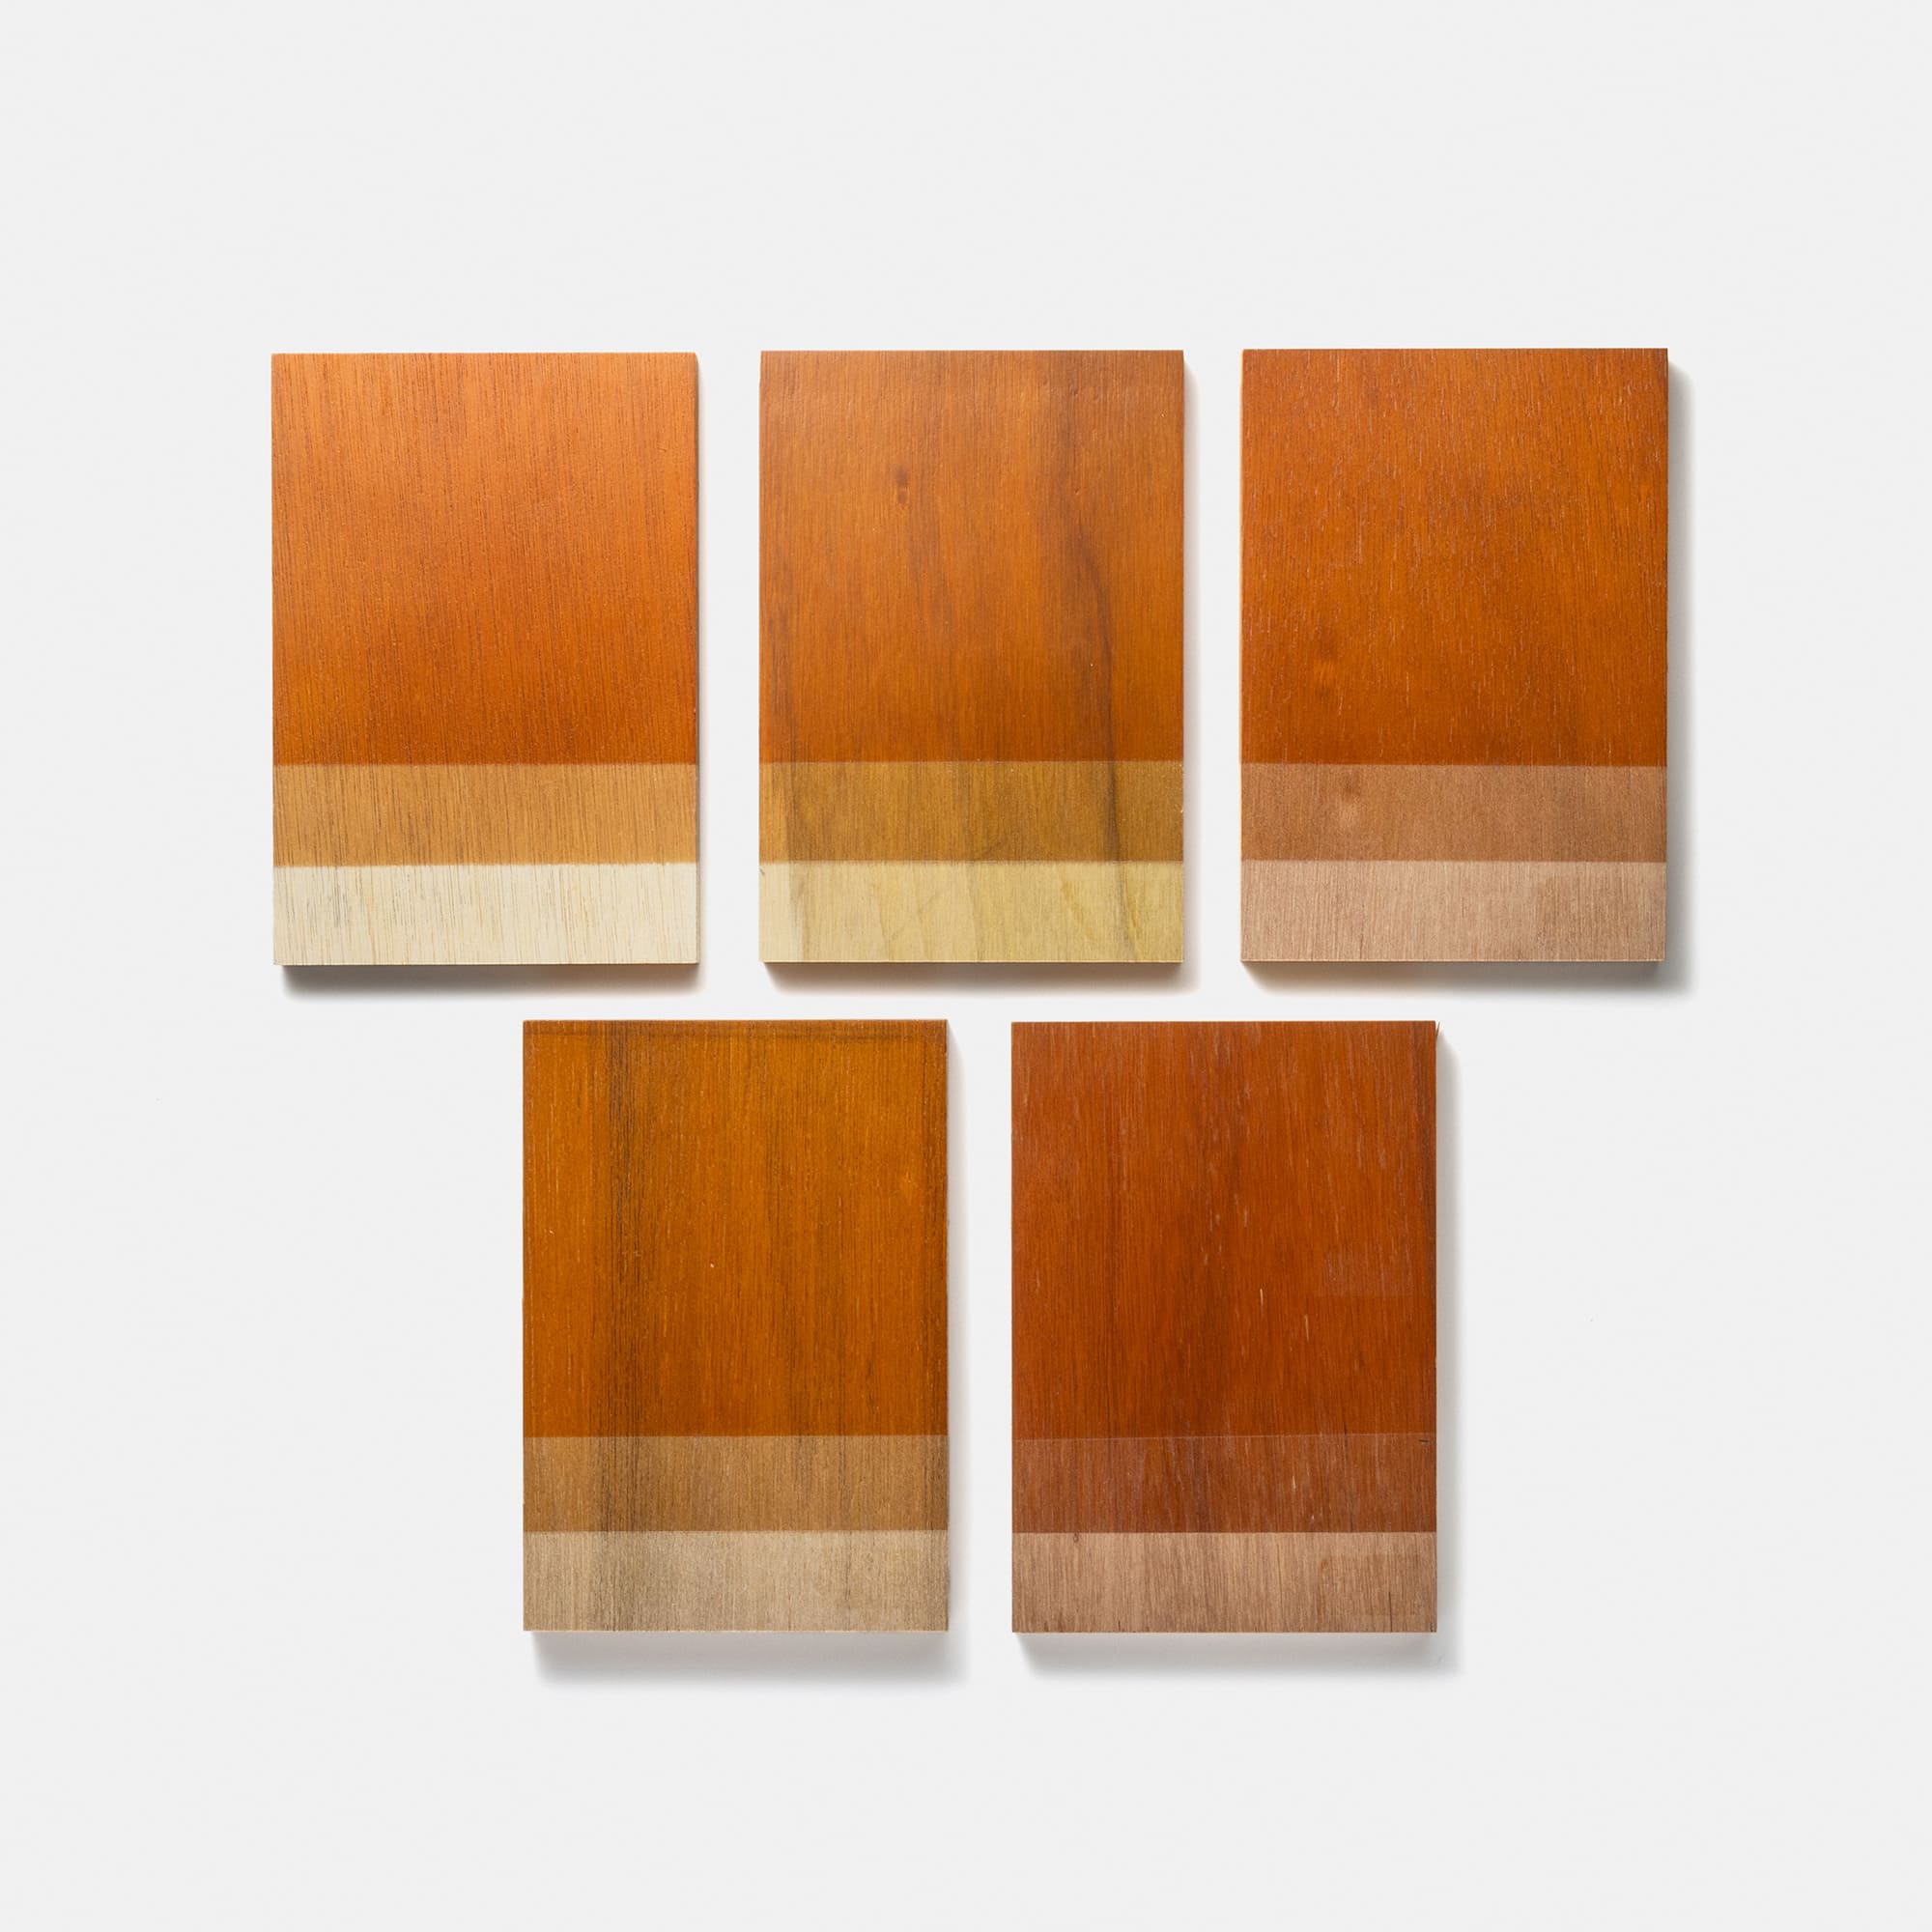 木製シェルビング ブラケット 棚板用 PS-BK009-02-G289 ラワン合板は基材の色の幅があるため、下地の色に合わせて調色しています